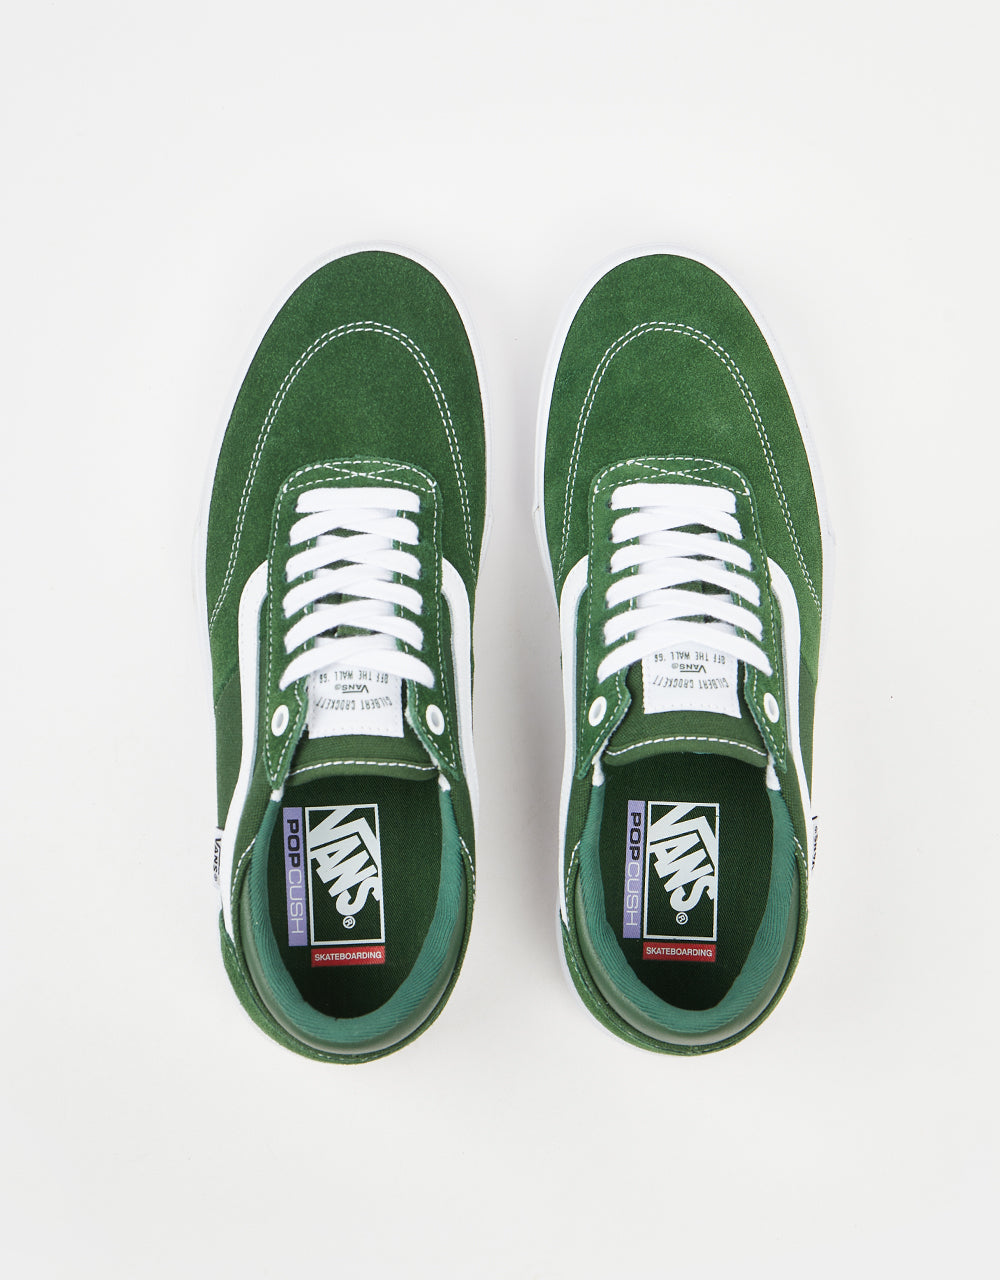 Vans Gilbert Crockett Skate Shoes - Green/White